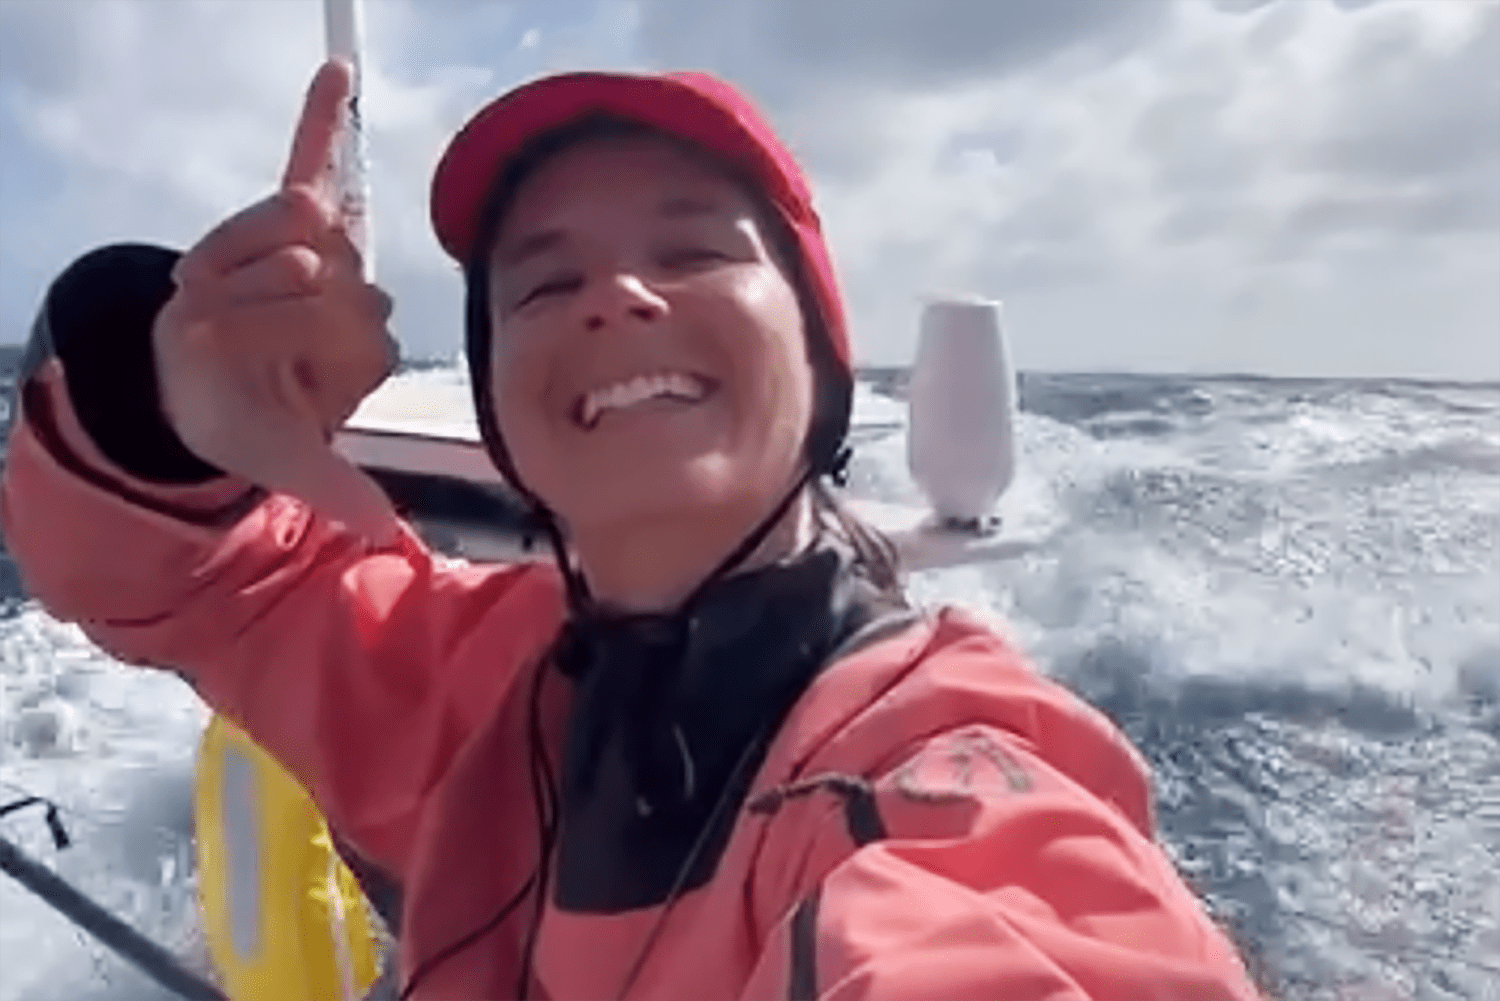 La marinera Cole Brauer hace historia como la primera mujer estadounidense en correr sola alrededor del mundo